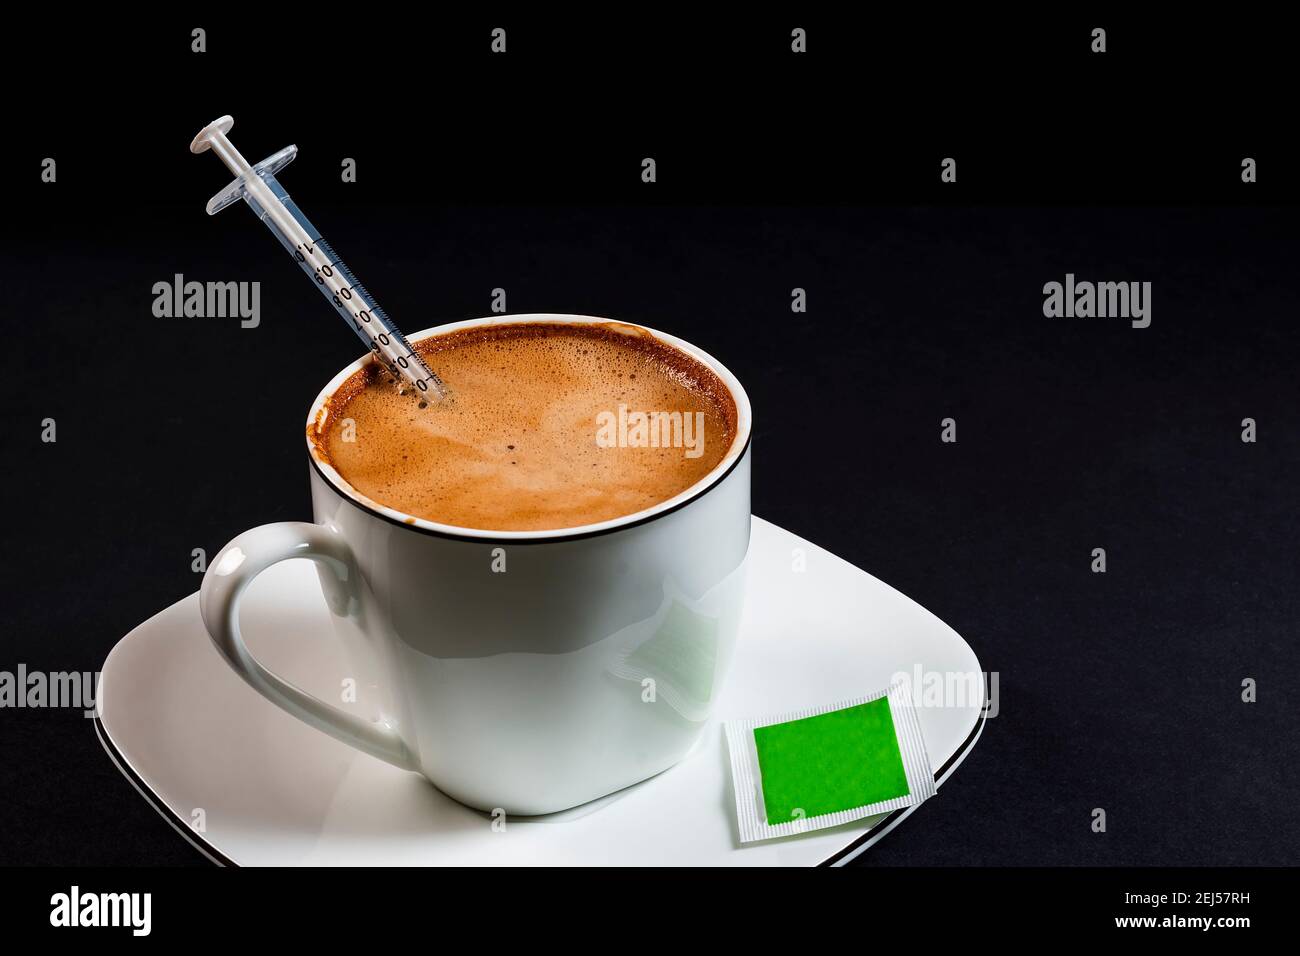 Café avec lait dans une tasse en porcelaine avec seringue à l'intérieur du café. Il s'agit d'une photo au format horizontal prise contre un noir arrière-plan sous artificiel l Banque D'Images